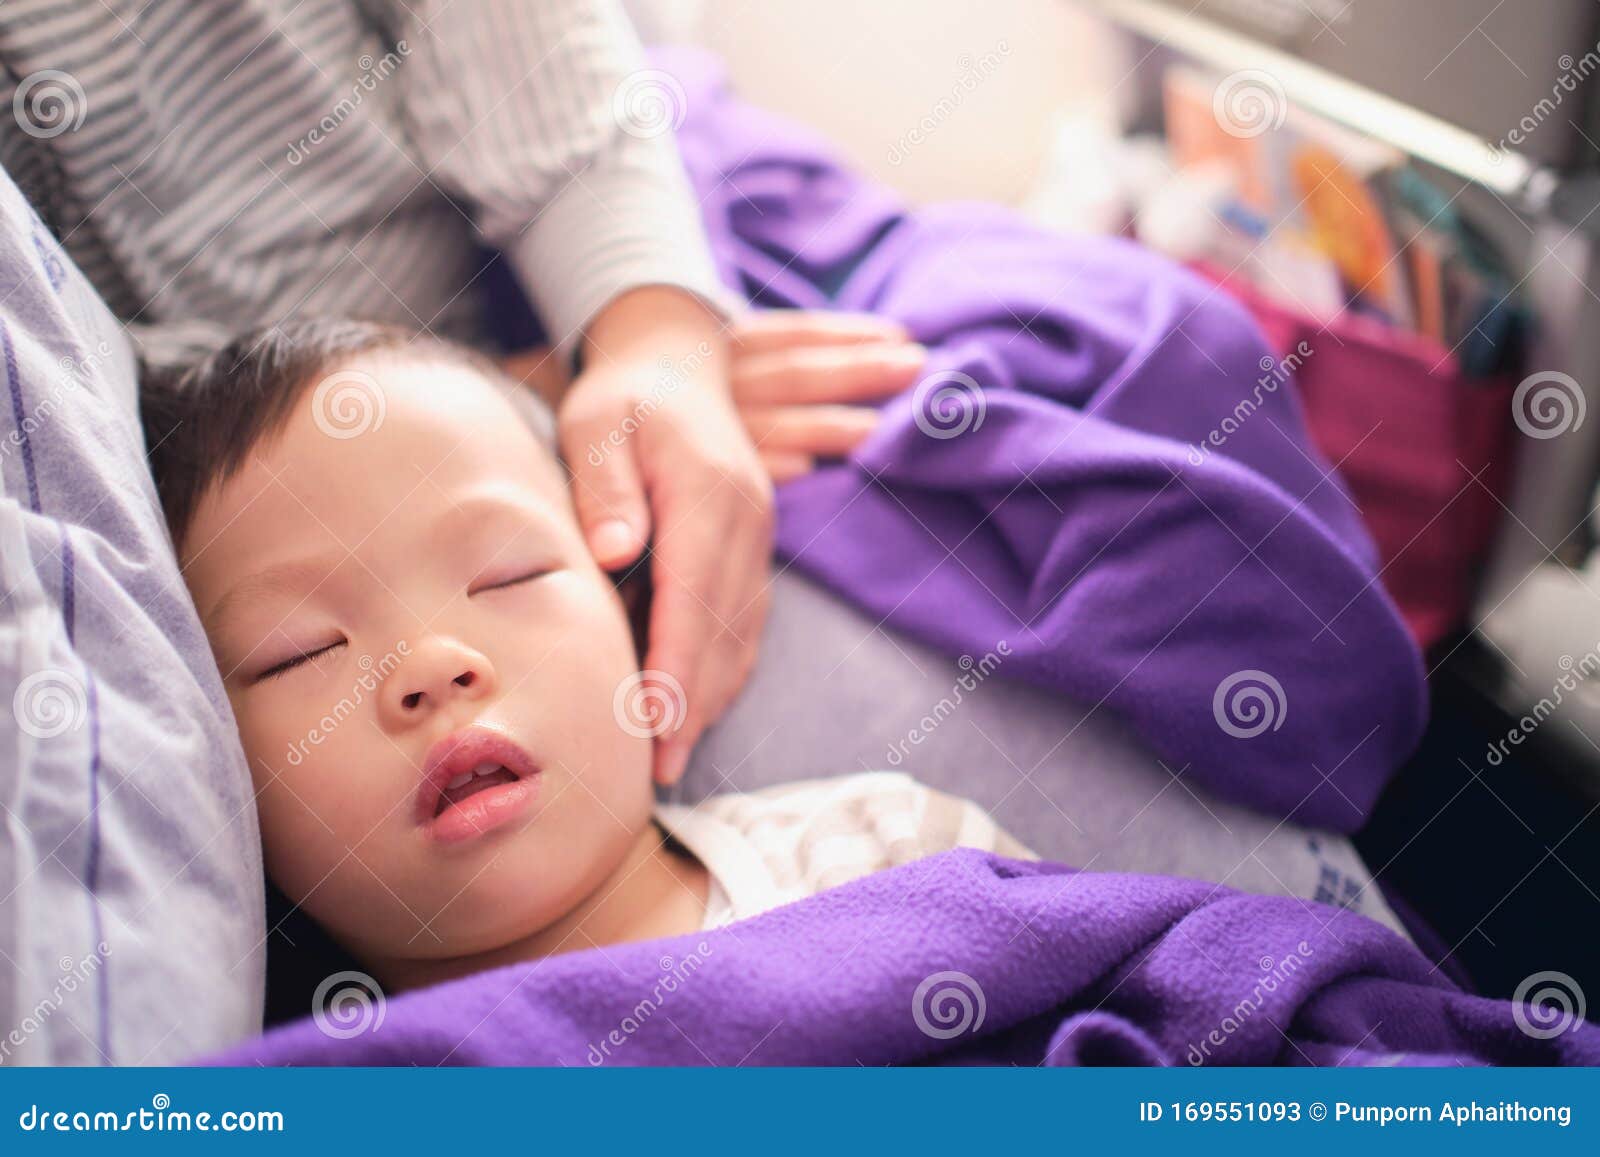 спящая мама азиатка и ее сын фото 31